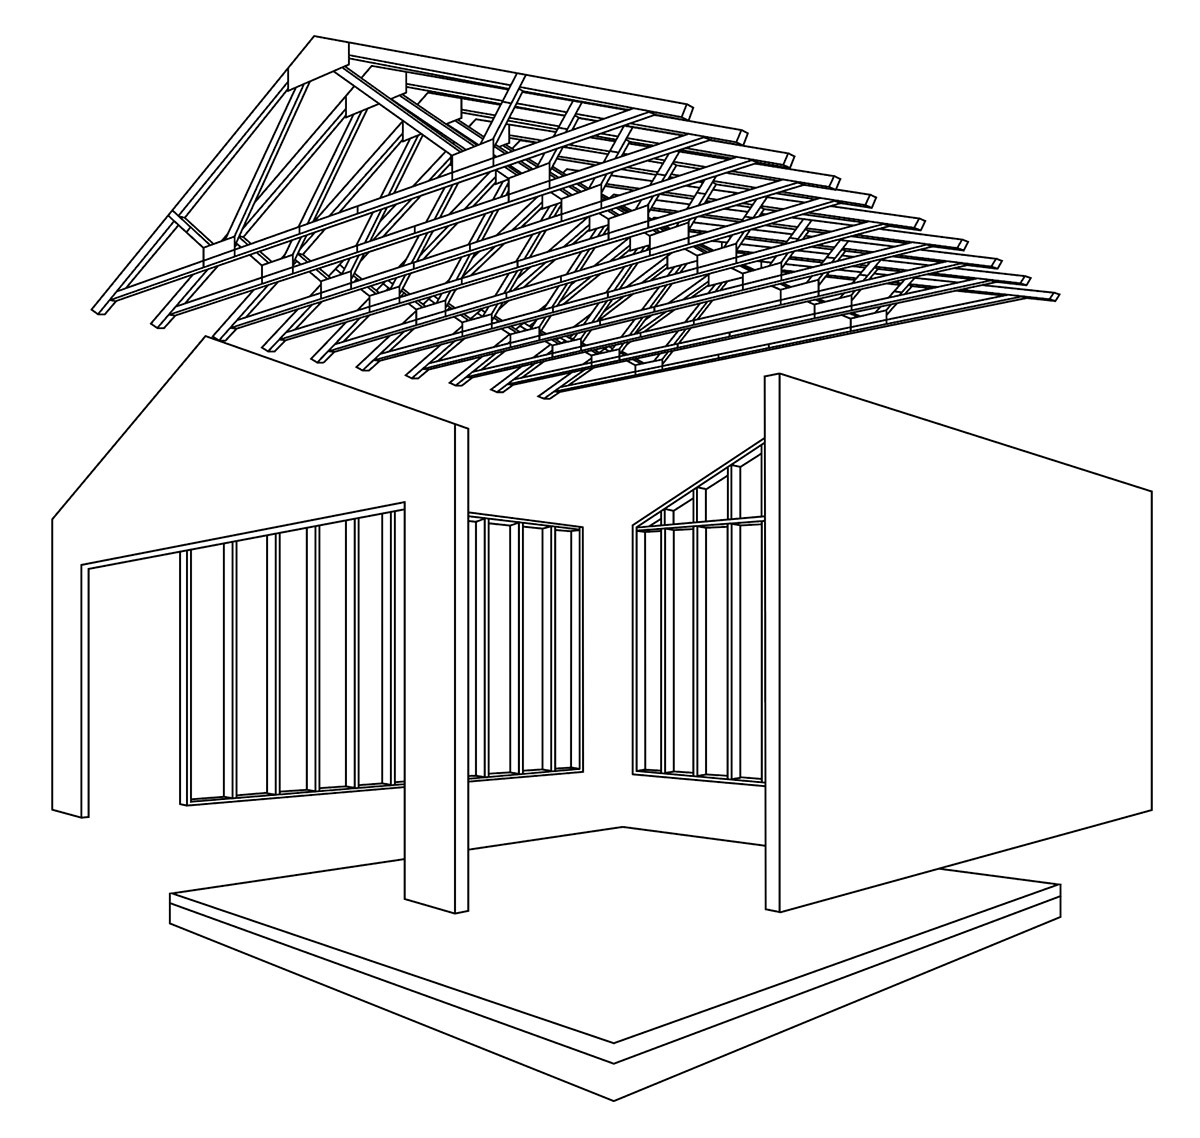 構造版と枠組み材を一体化させた僕像枠組壁構法（2×4工法）